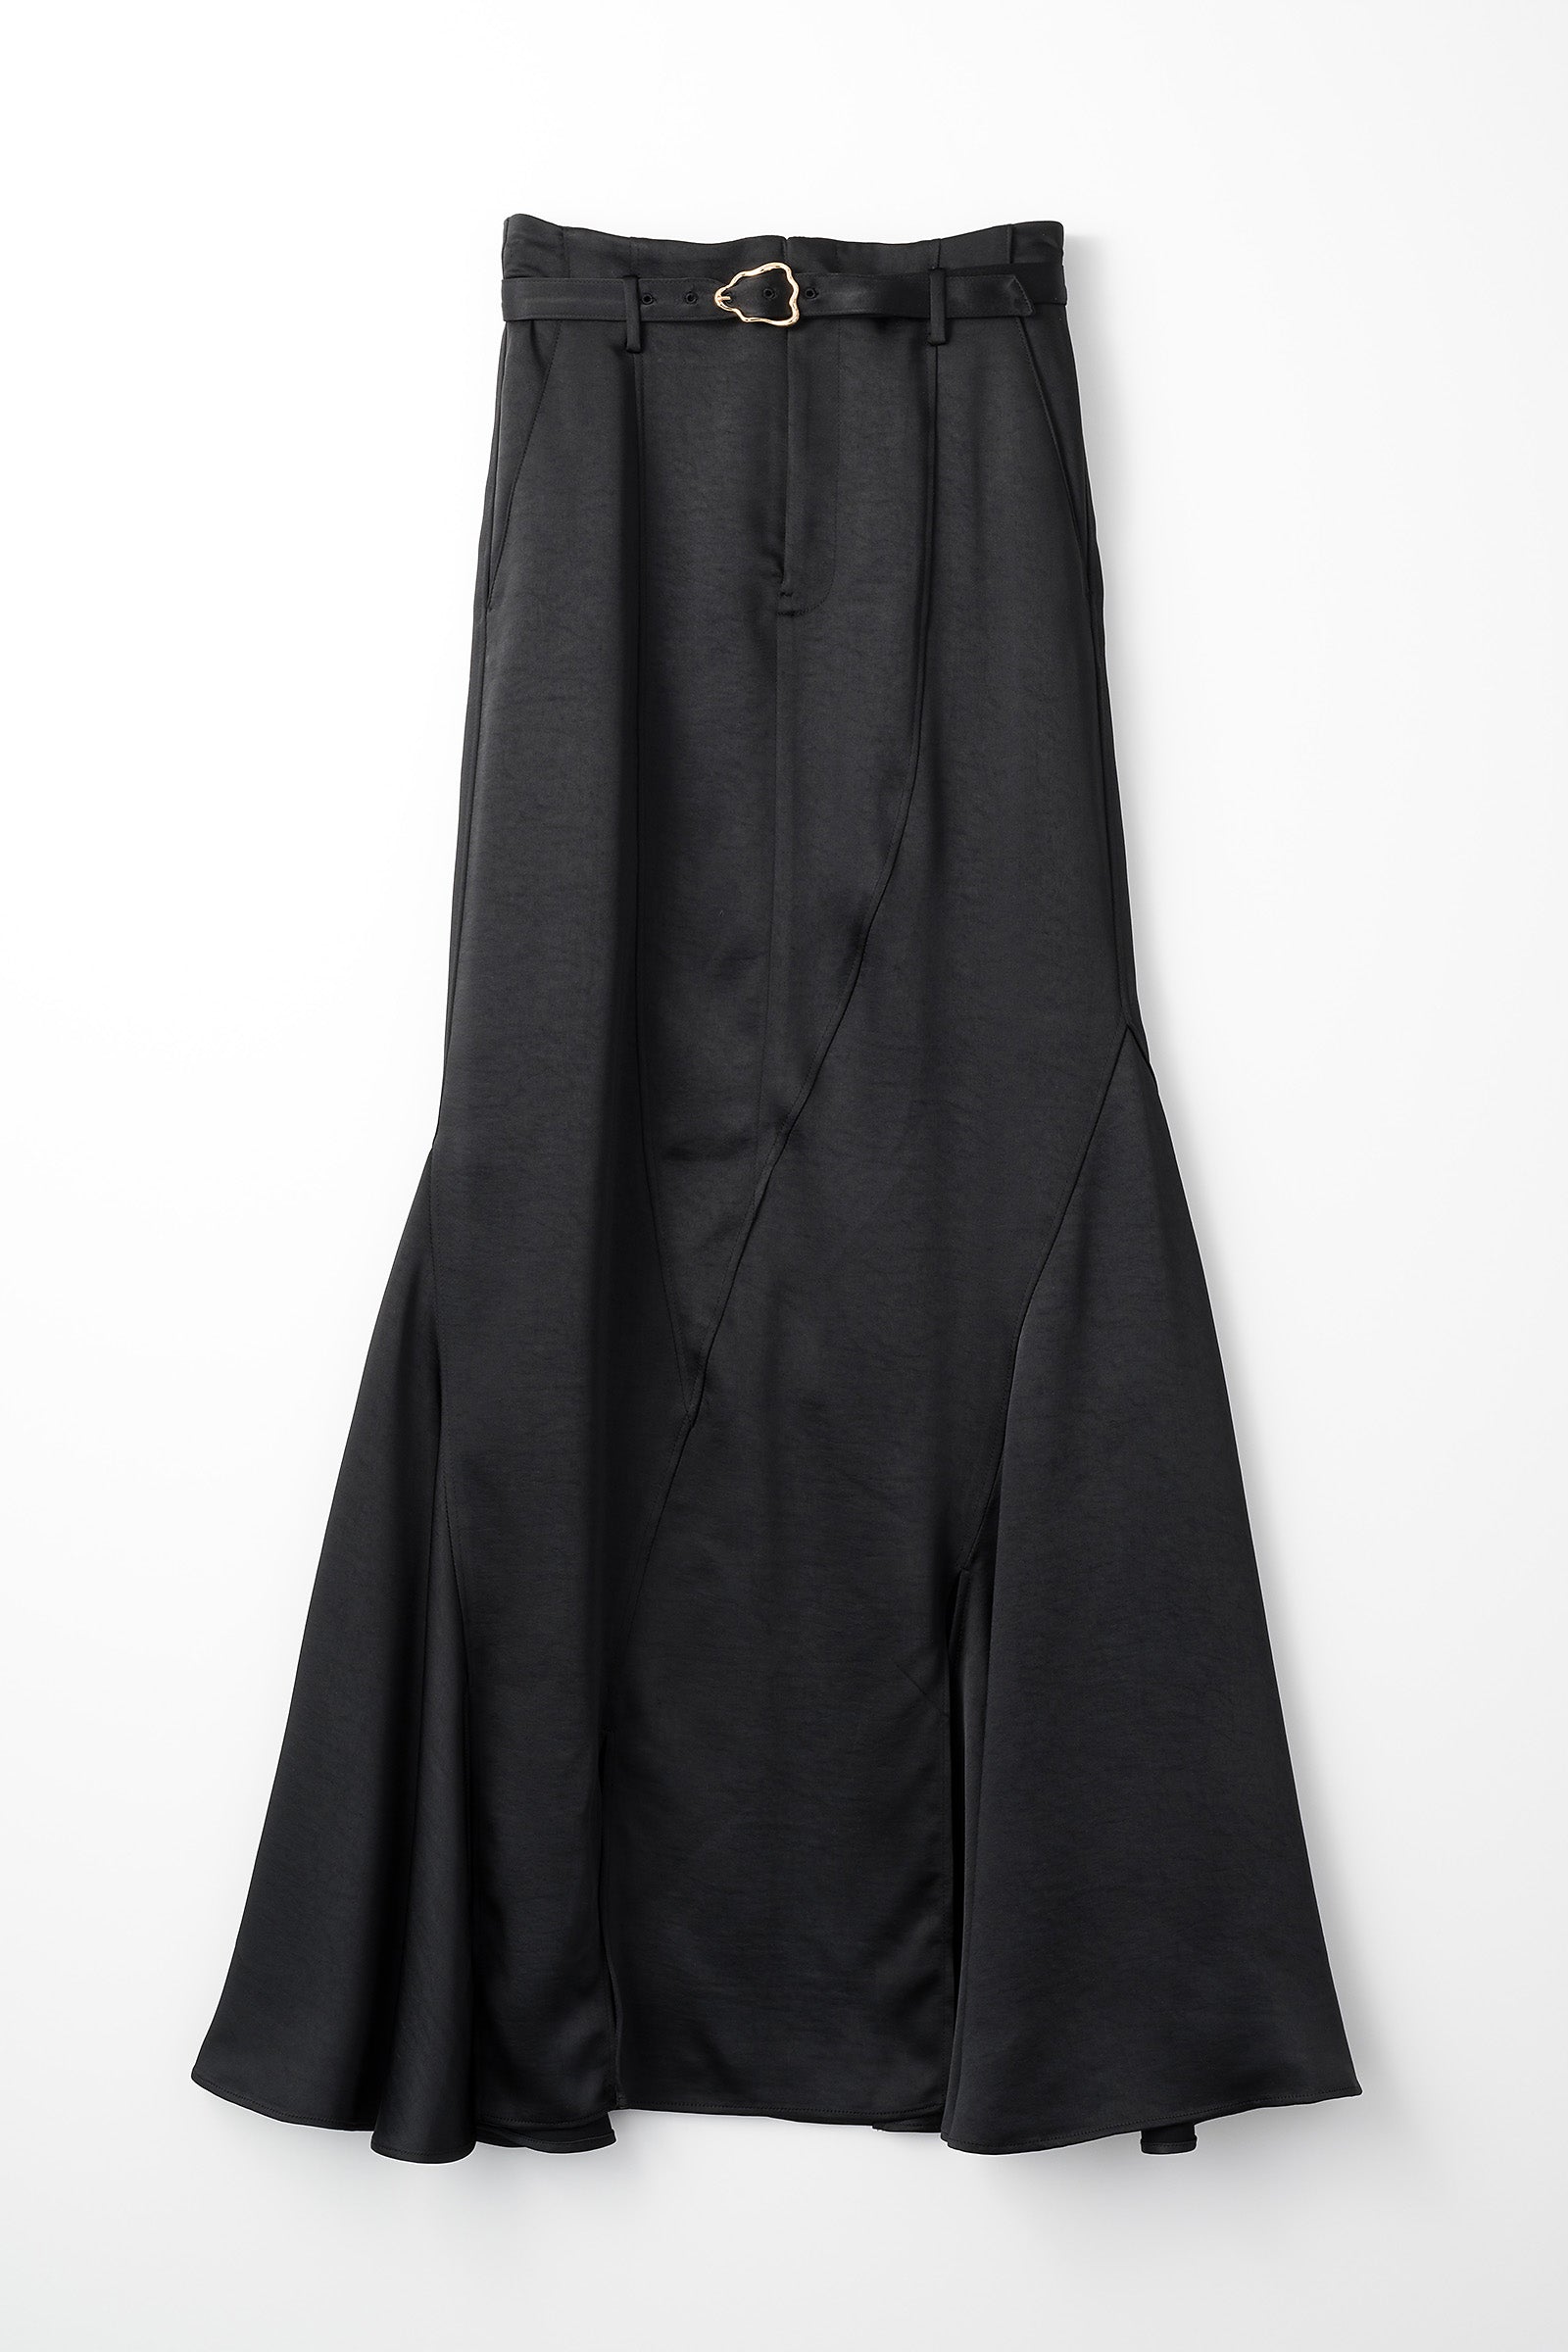 MURRAL Curvy satin skirt (Black)-